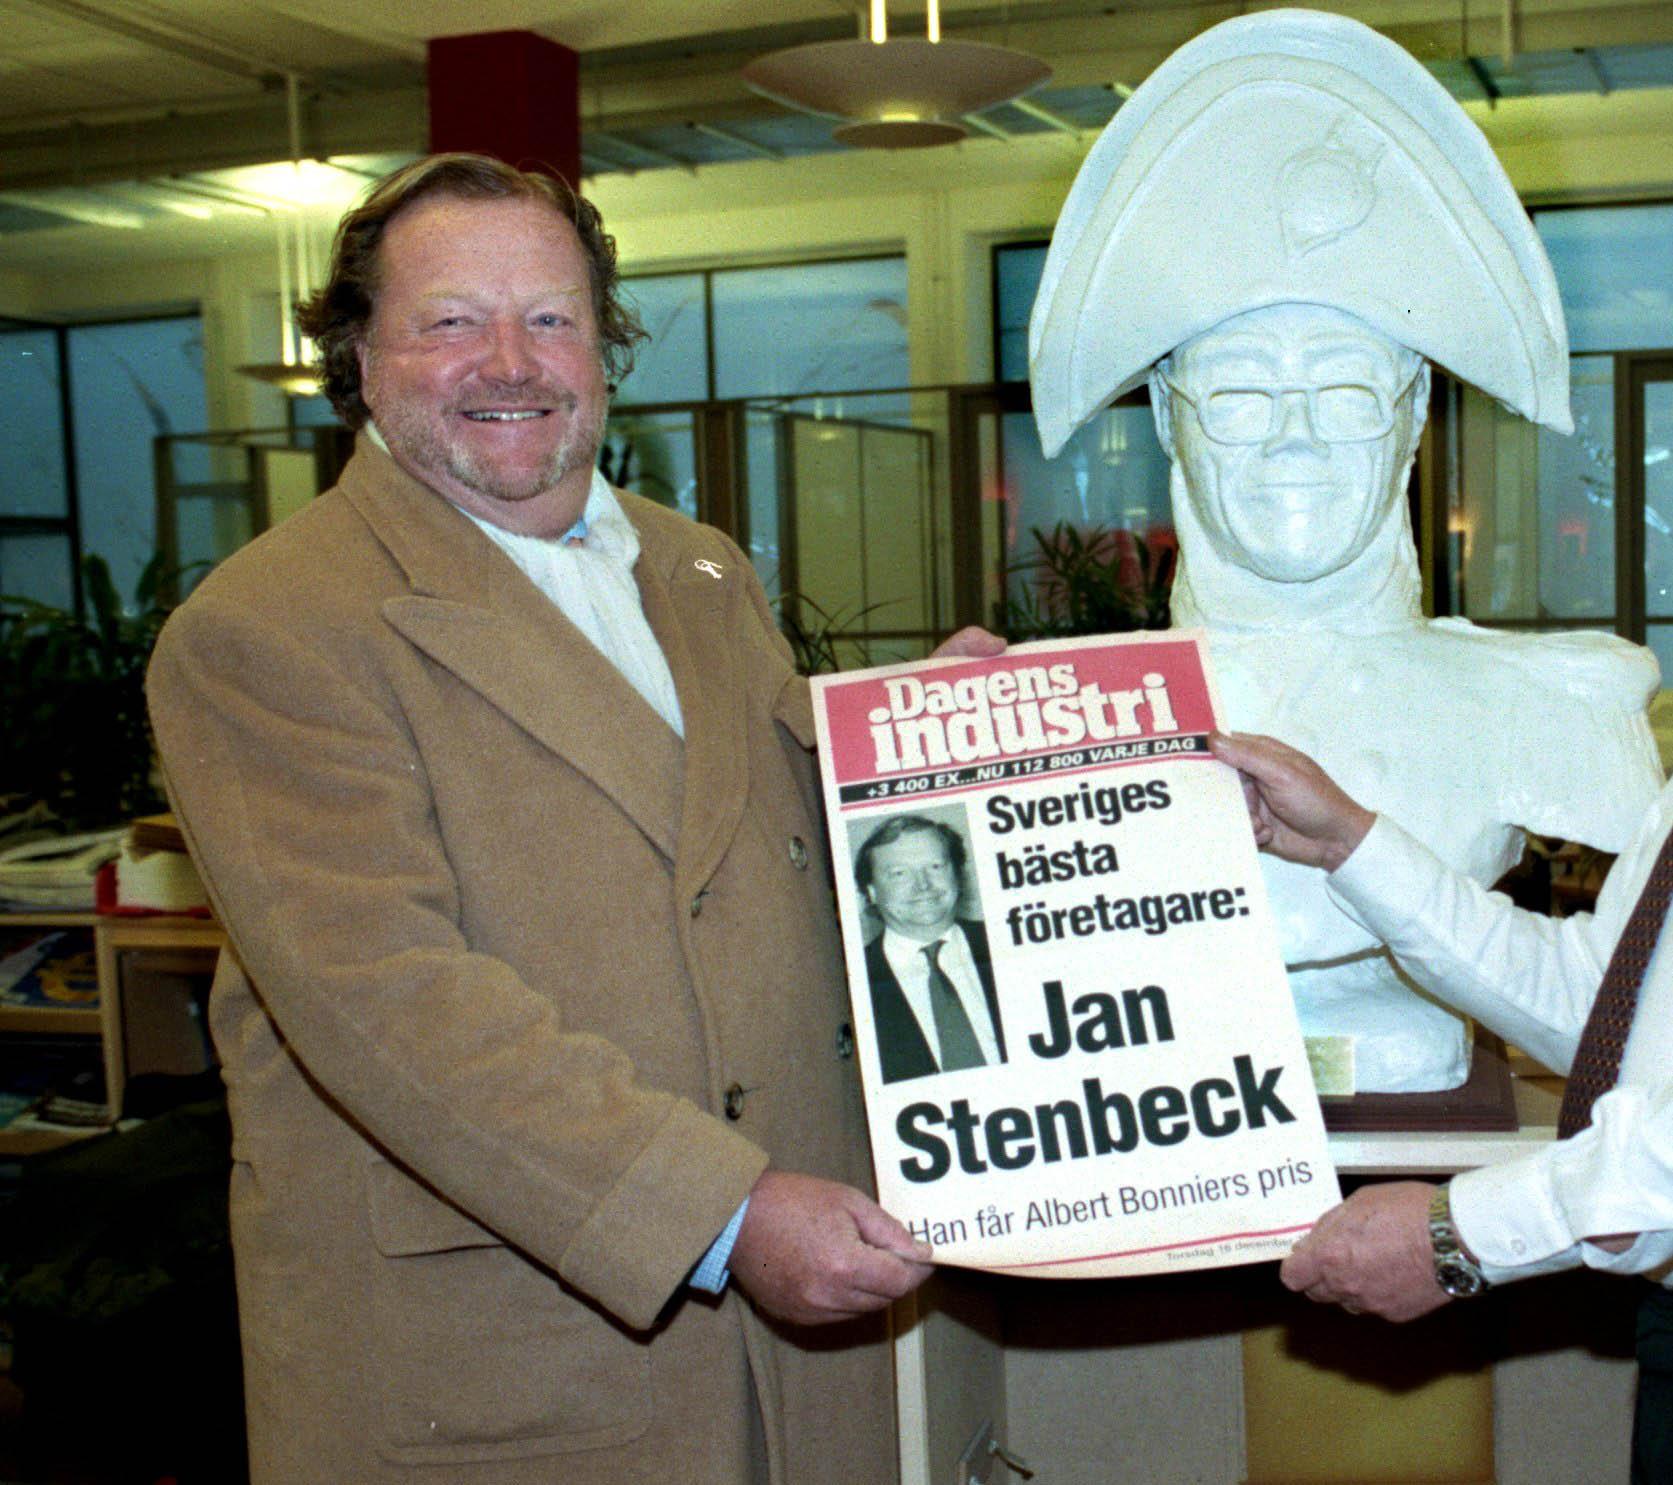 Finansmannen Jan Stenbeck startade TV3 och Viasat och bröt upp radio-, tv- och telefonimonpolet i Sverige. Dottern Cristina Stenbeck tog över imperiet efter faderns död 2002. I dag arbetar inget av barnen kvar i företagen.